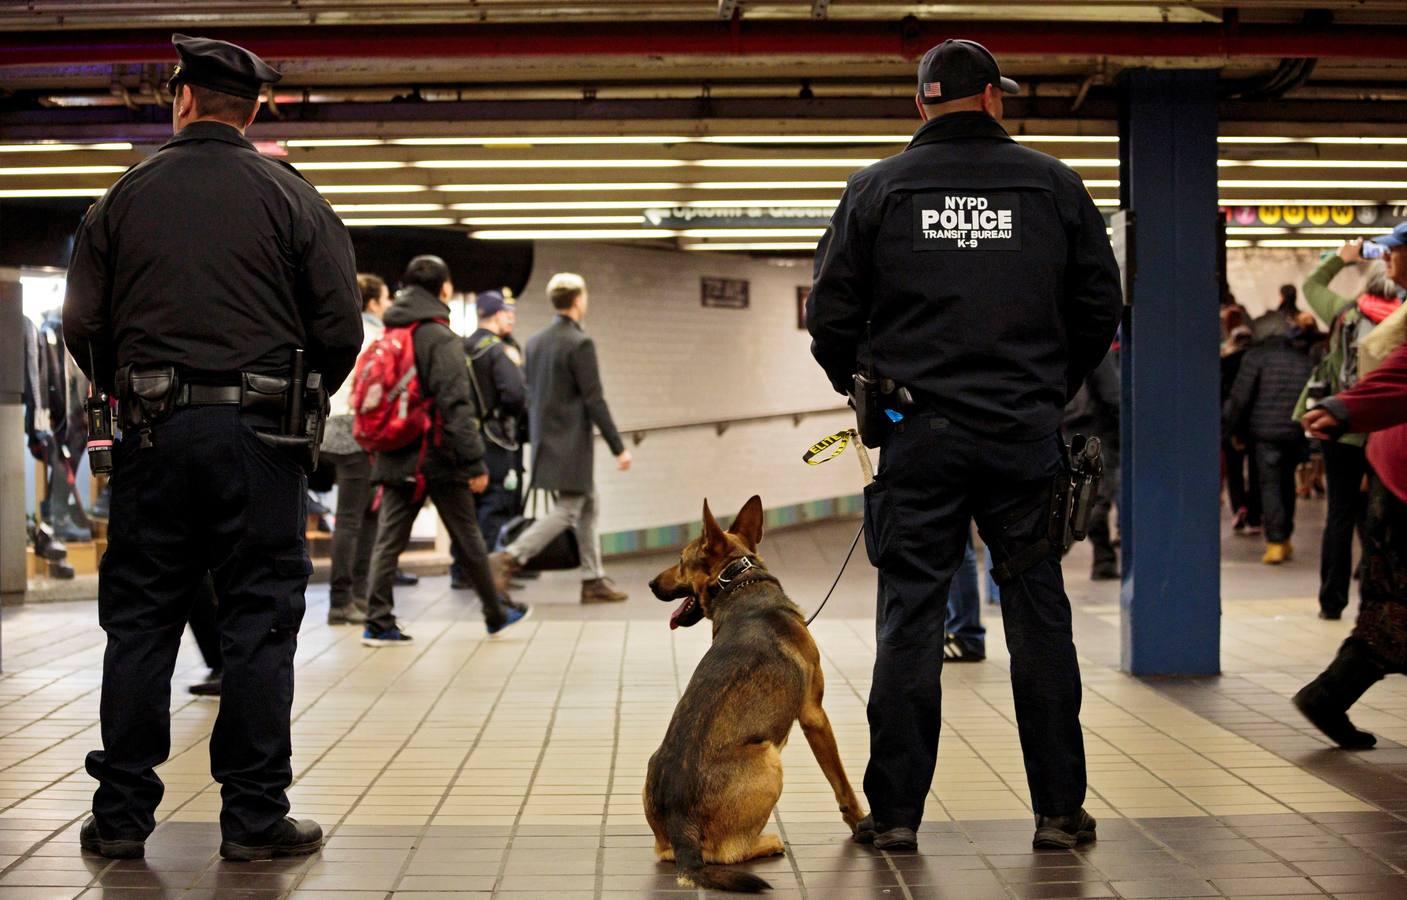 El autor del atentado fallido en Nueva York es acusado de terrorismo. En la imagen, la policía controla el metro de Nueva York.